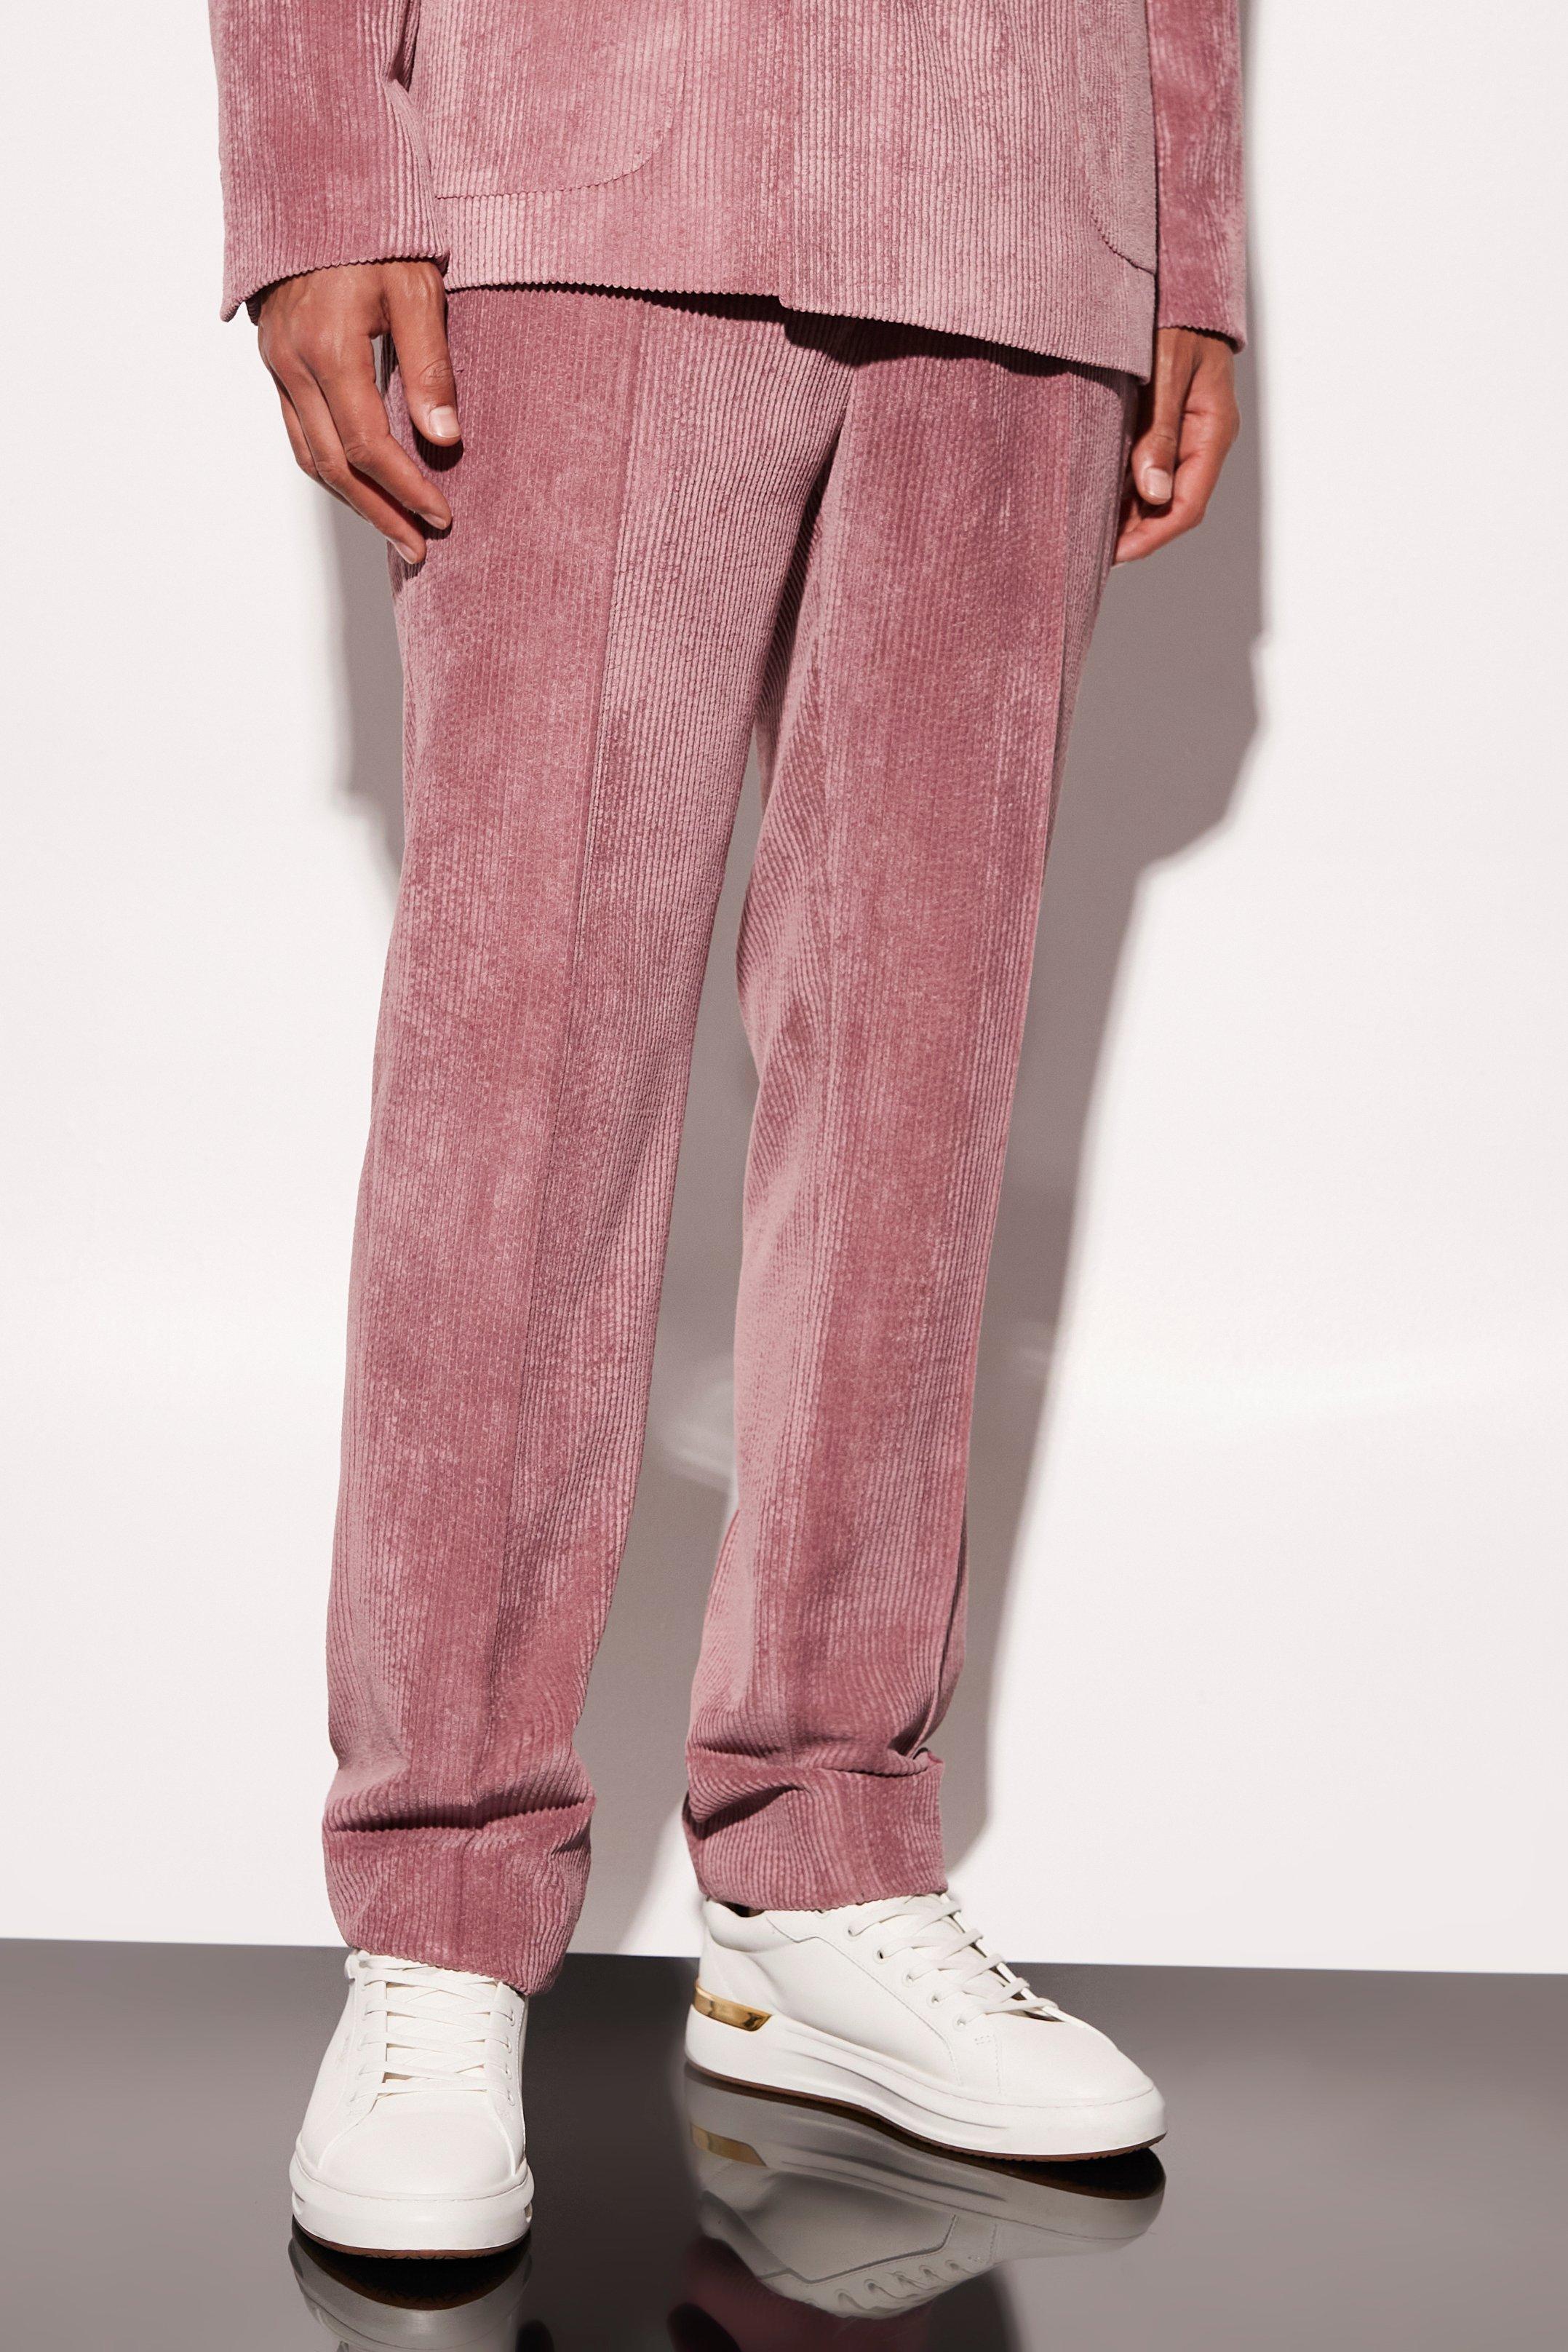 tall - pantalon de costume en velours côtelé homme - rose - 38, rose